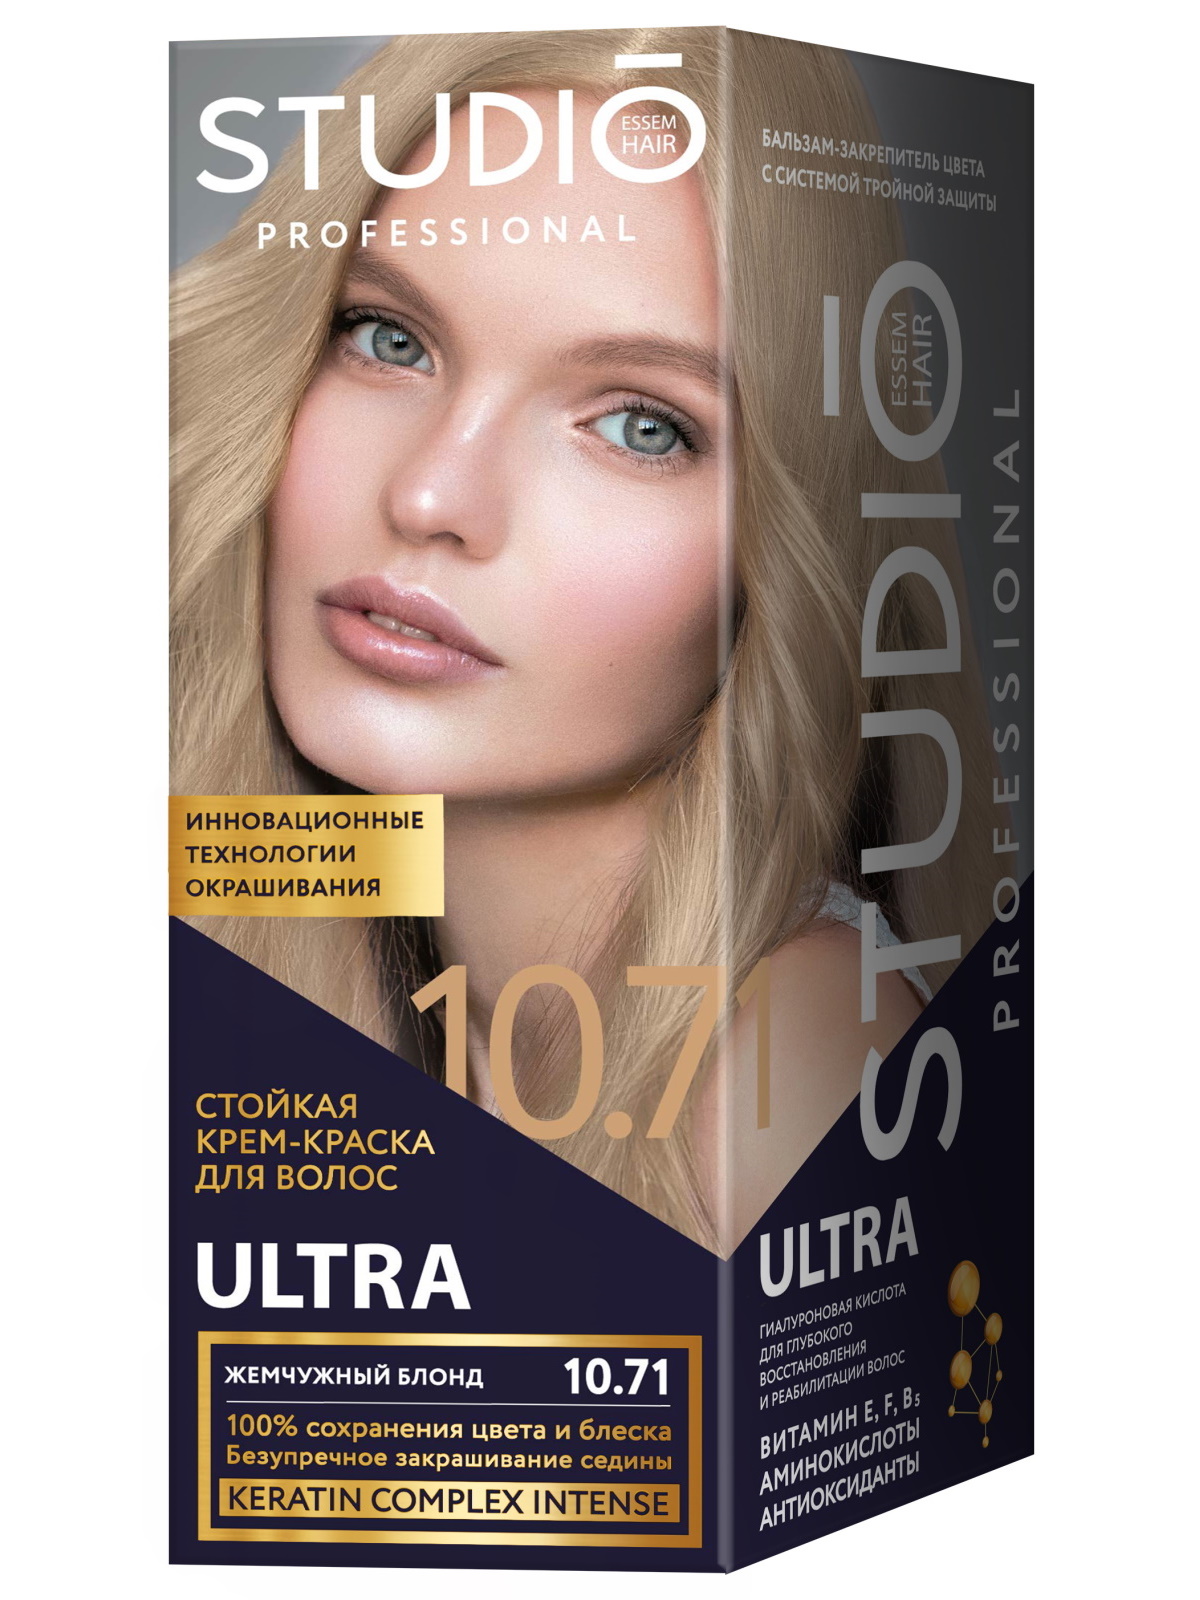 Комплект ULTRA для окрашивания волос STUDIO PROFESSIONAL 10.71 жемчужный блонд 2*50+15 мл средство для поддержания оттенка окрашенных волос золотистый ultra gold treatment 47331 1000 мл